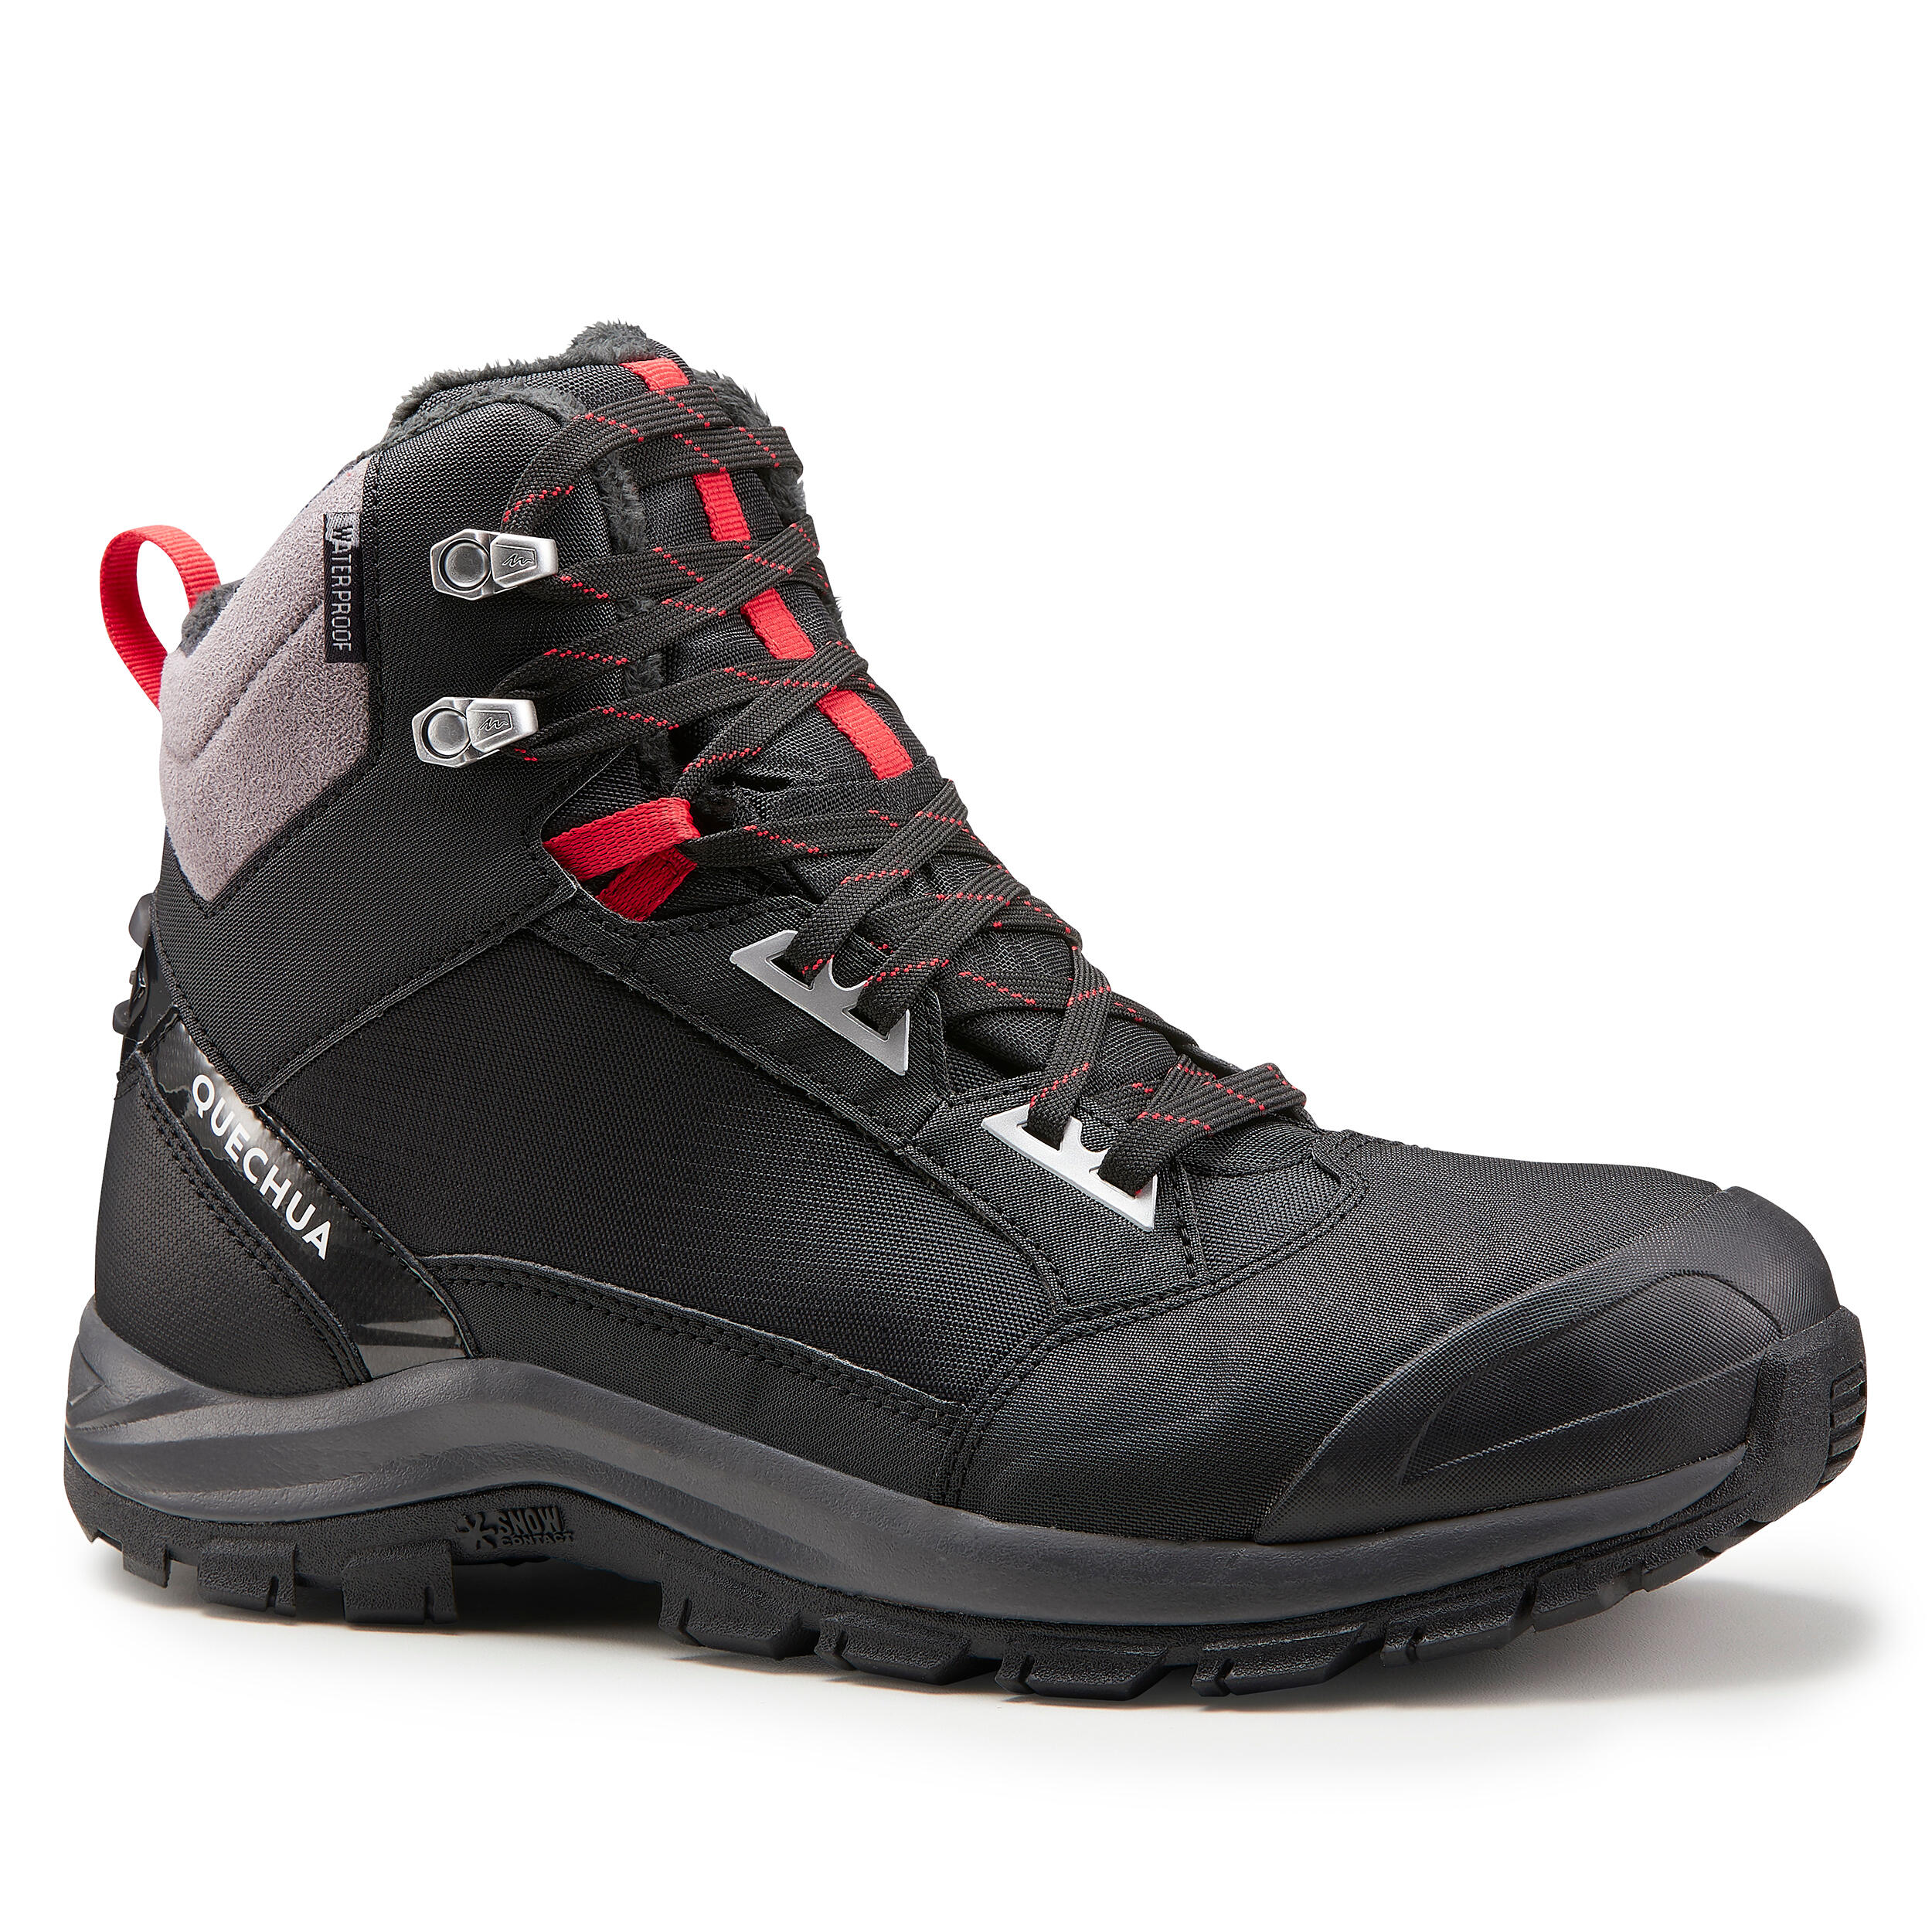 QUECHUA Chaussures chaudes imperméables de randonnée neige - SH520 X-WARM - MID Homme - QUECHUA - 41